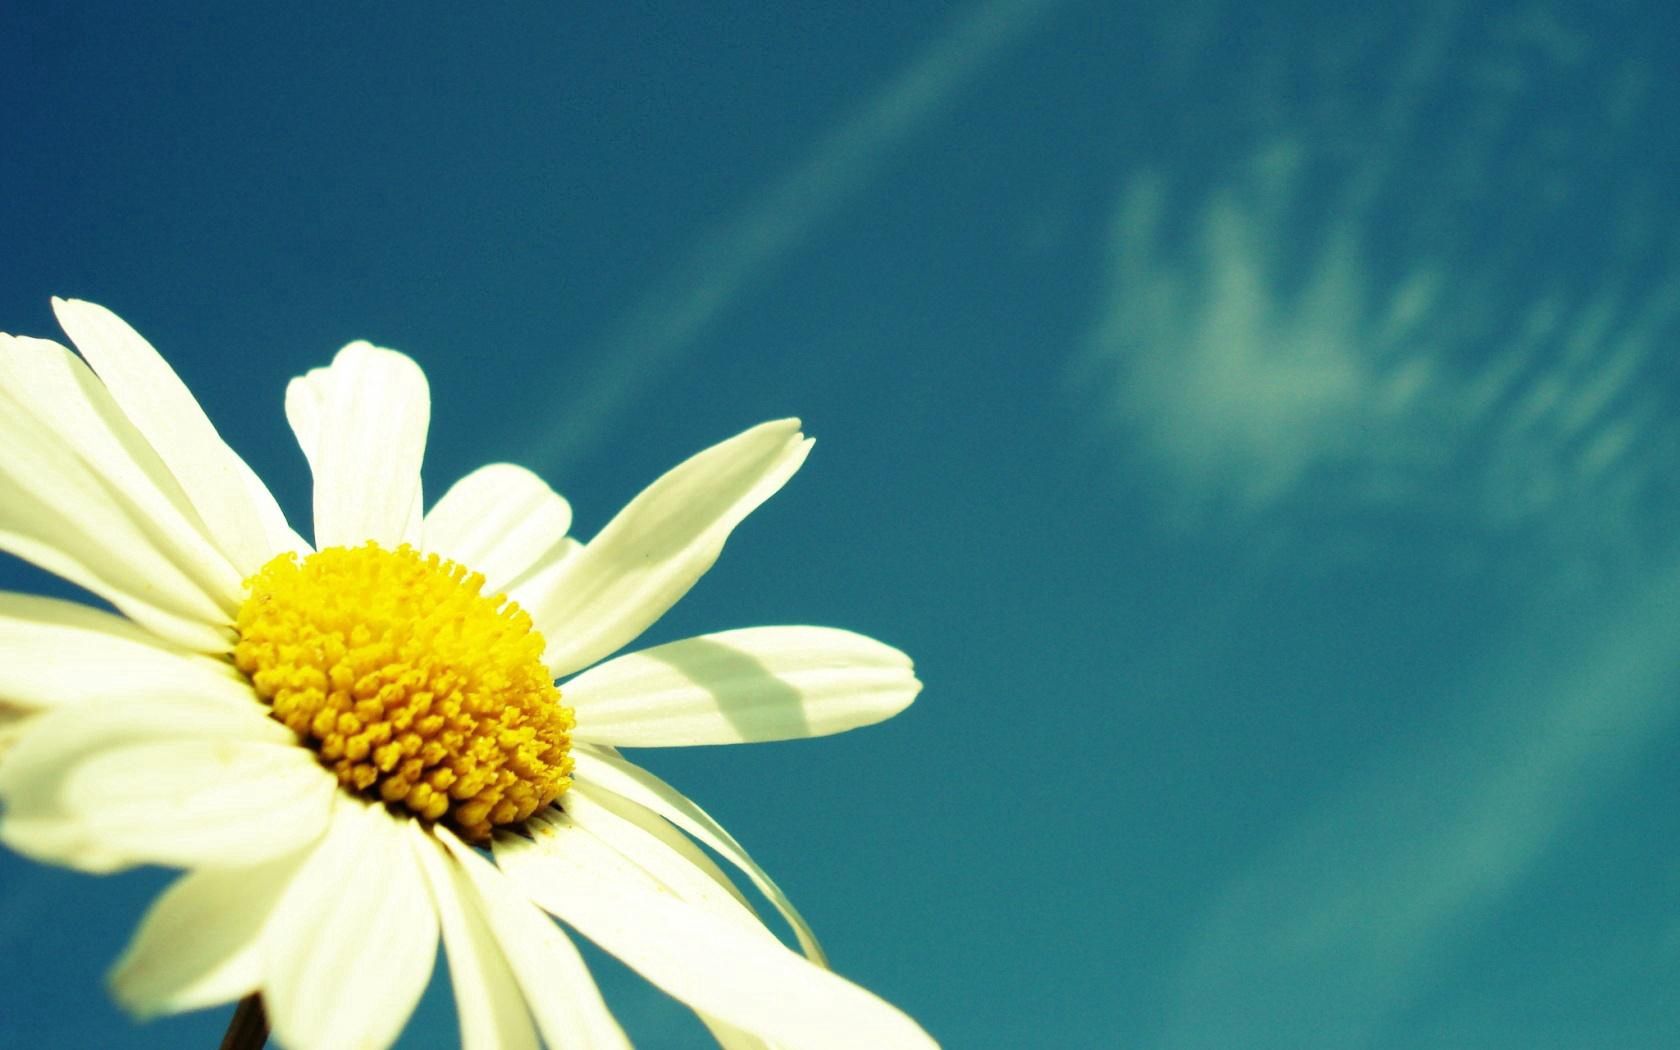 Скачать обои бесплатно Пыльца, Небо, Цветок, Цветы, Ромашка, Лето картинка на рабочий стол ПК